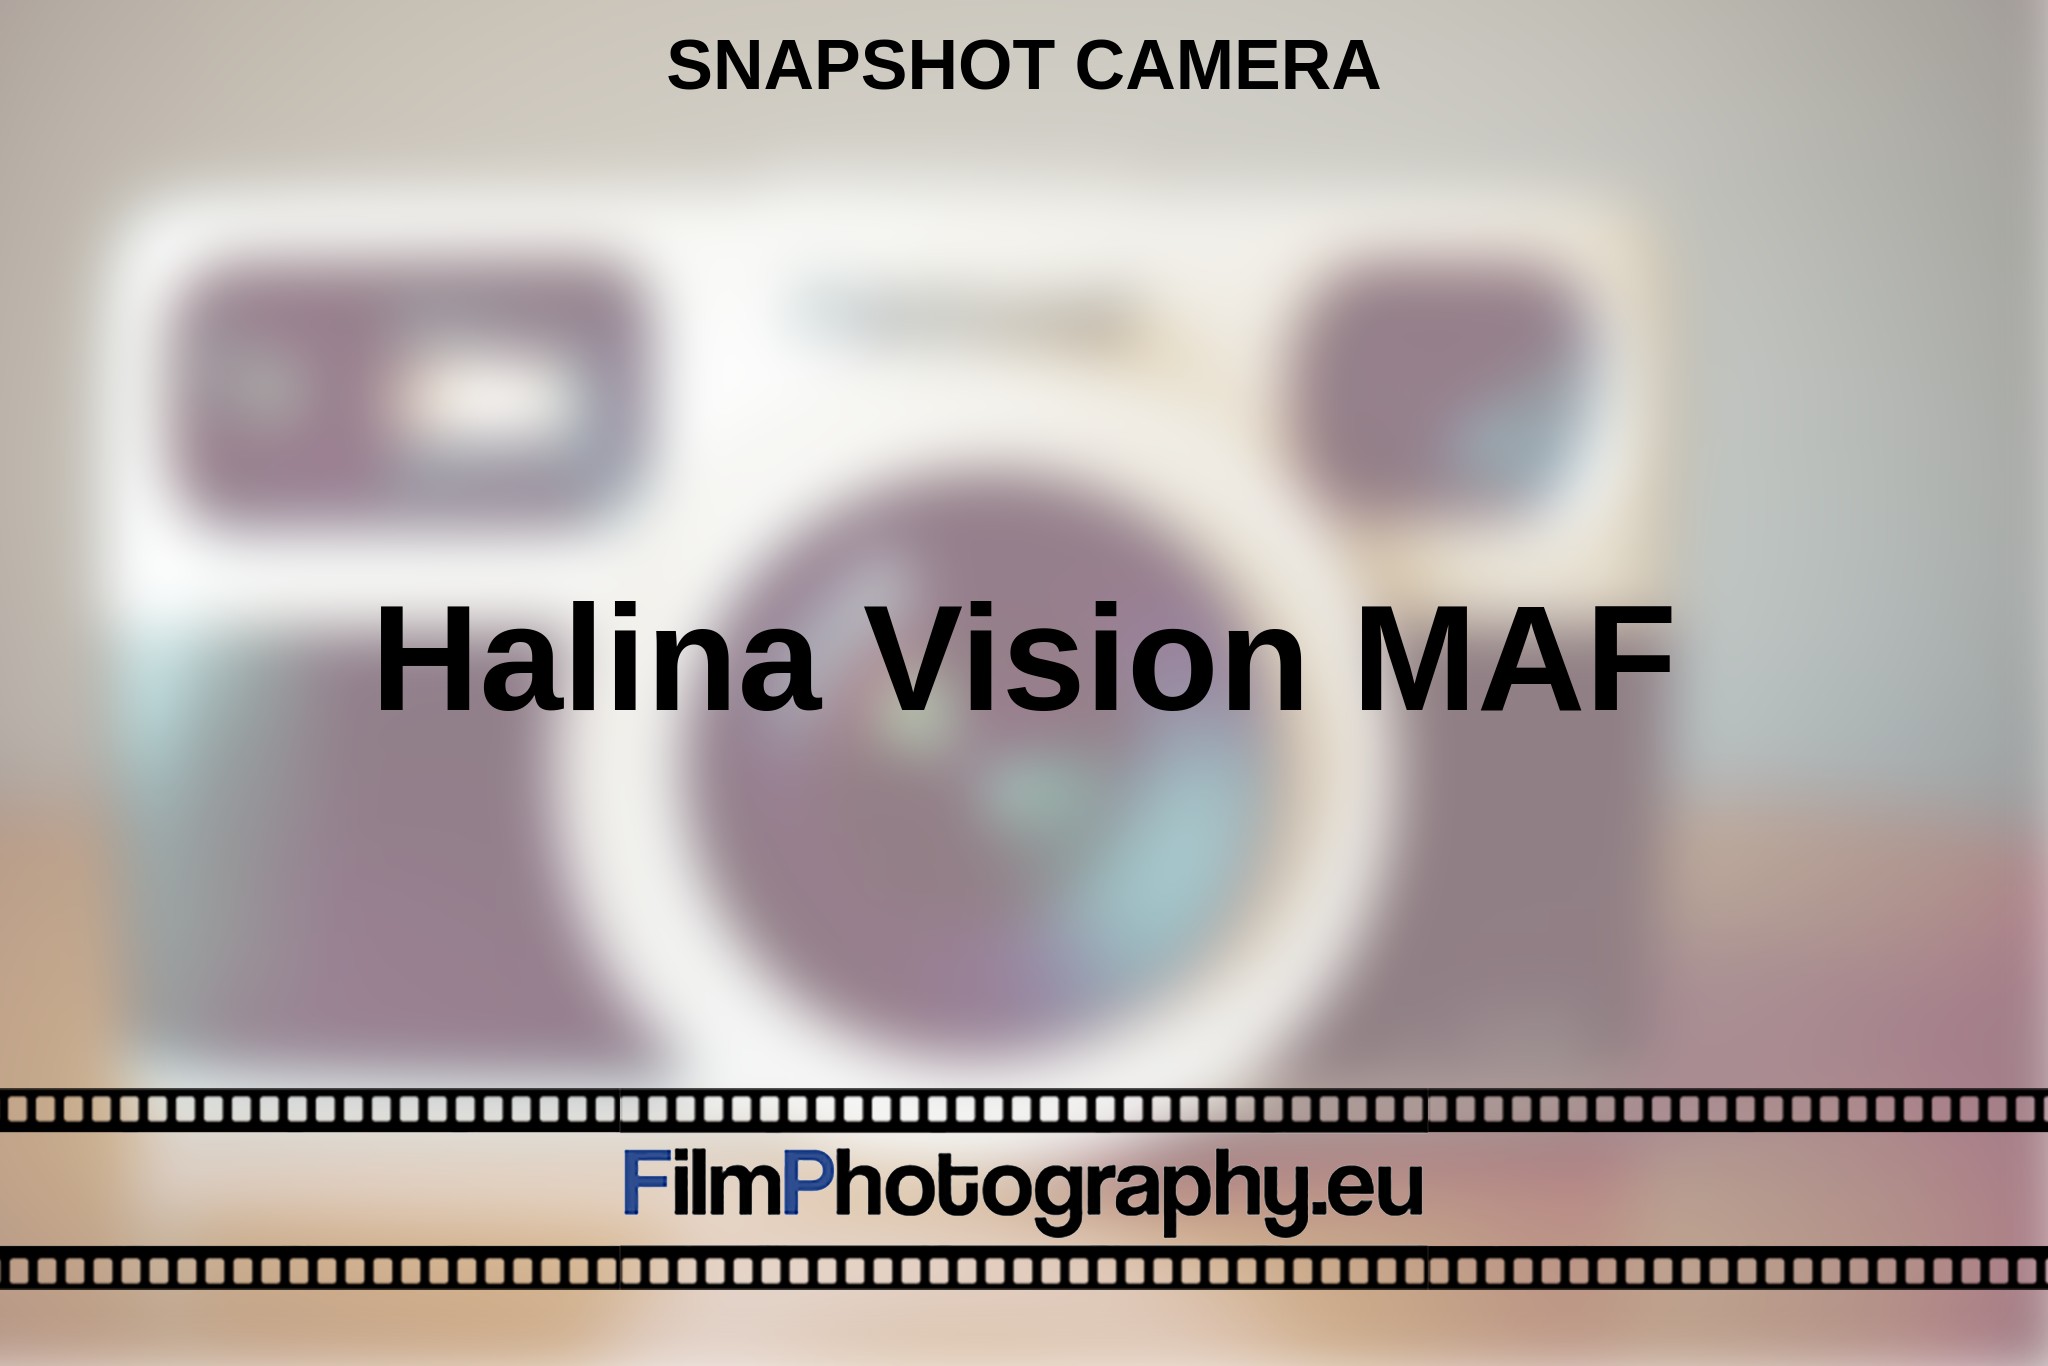 halina-vision-maf-snapshot-camera-en-bnv.jpg